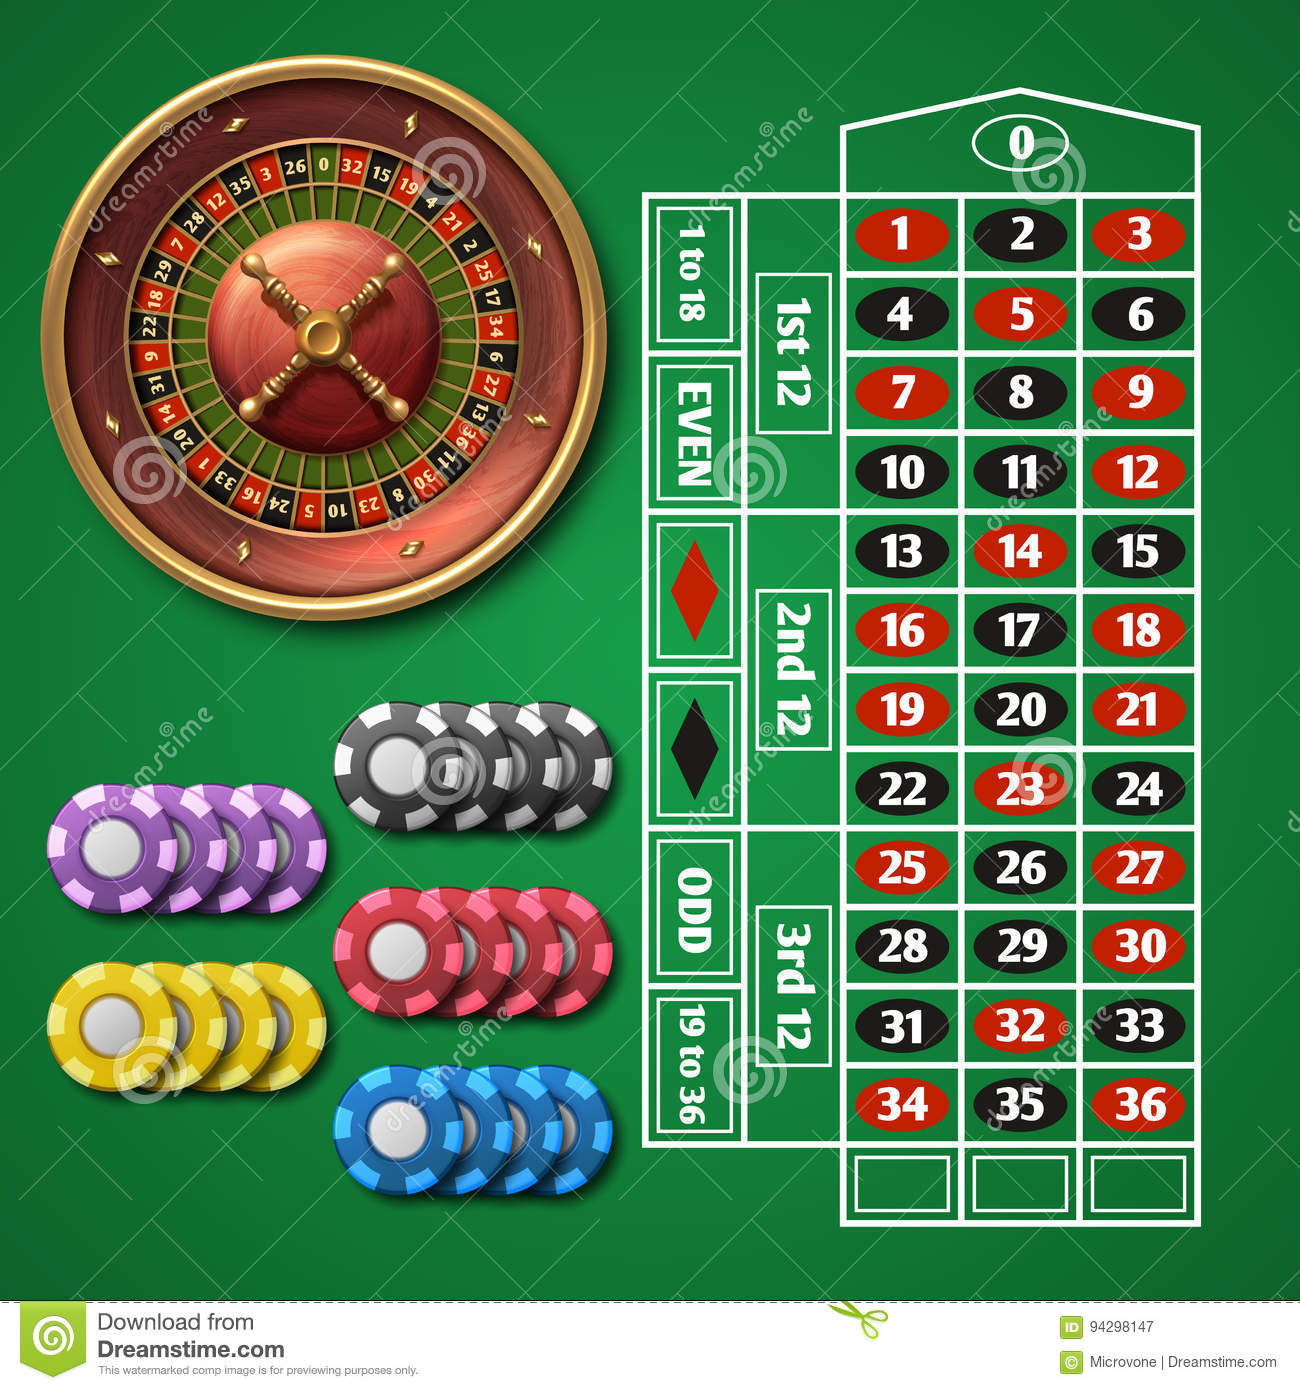 Демо игры казино автоматы бесплатно без регистрации